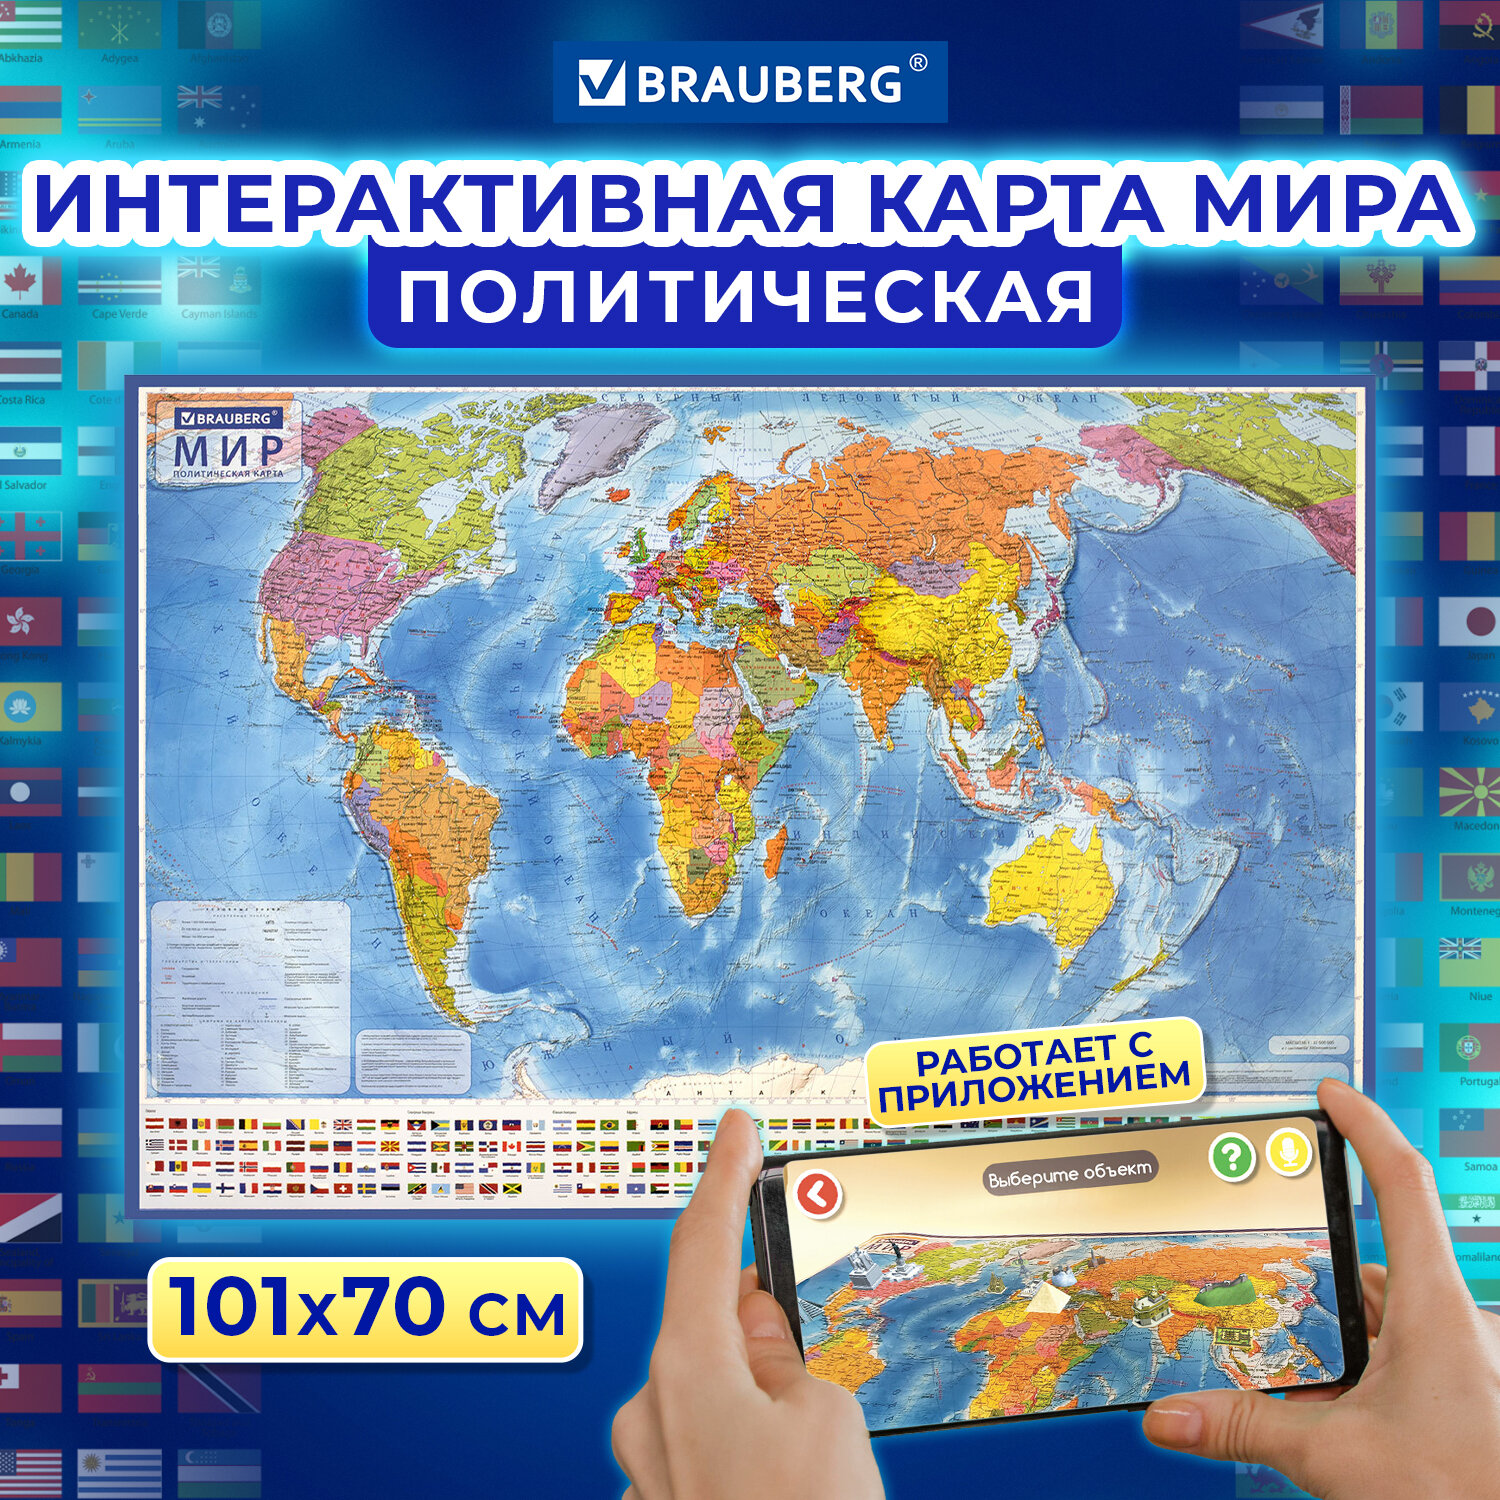 Карта мира политическая 101х70 см, 1:32М, с ламинацией, интерактивная,BRAUBERG - отзывы покупателей на маркетплейсе Мегамаркет